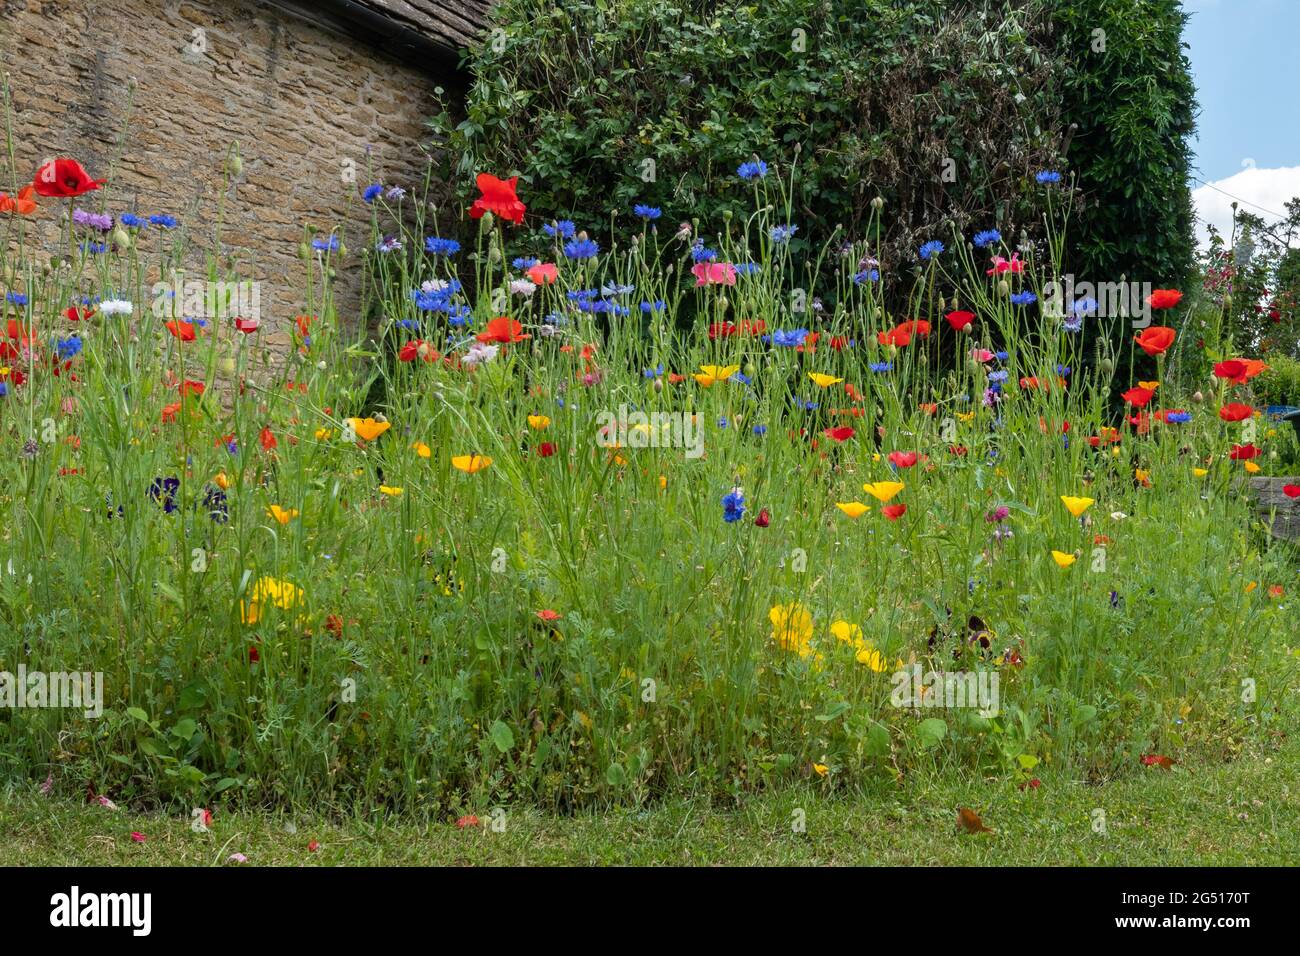 Jardin coloré de fleurs sauvages avec des coquelicots rouges et des cornflowers bleus pendant l'été, Angleterre, Royaume-Uni Banque D'Images